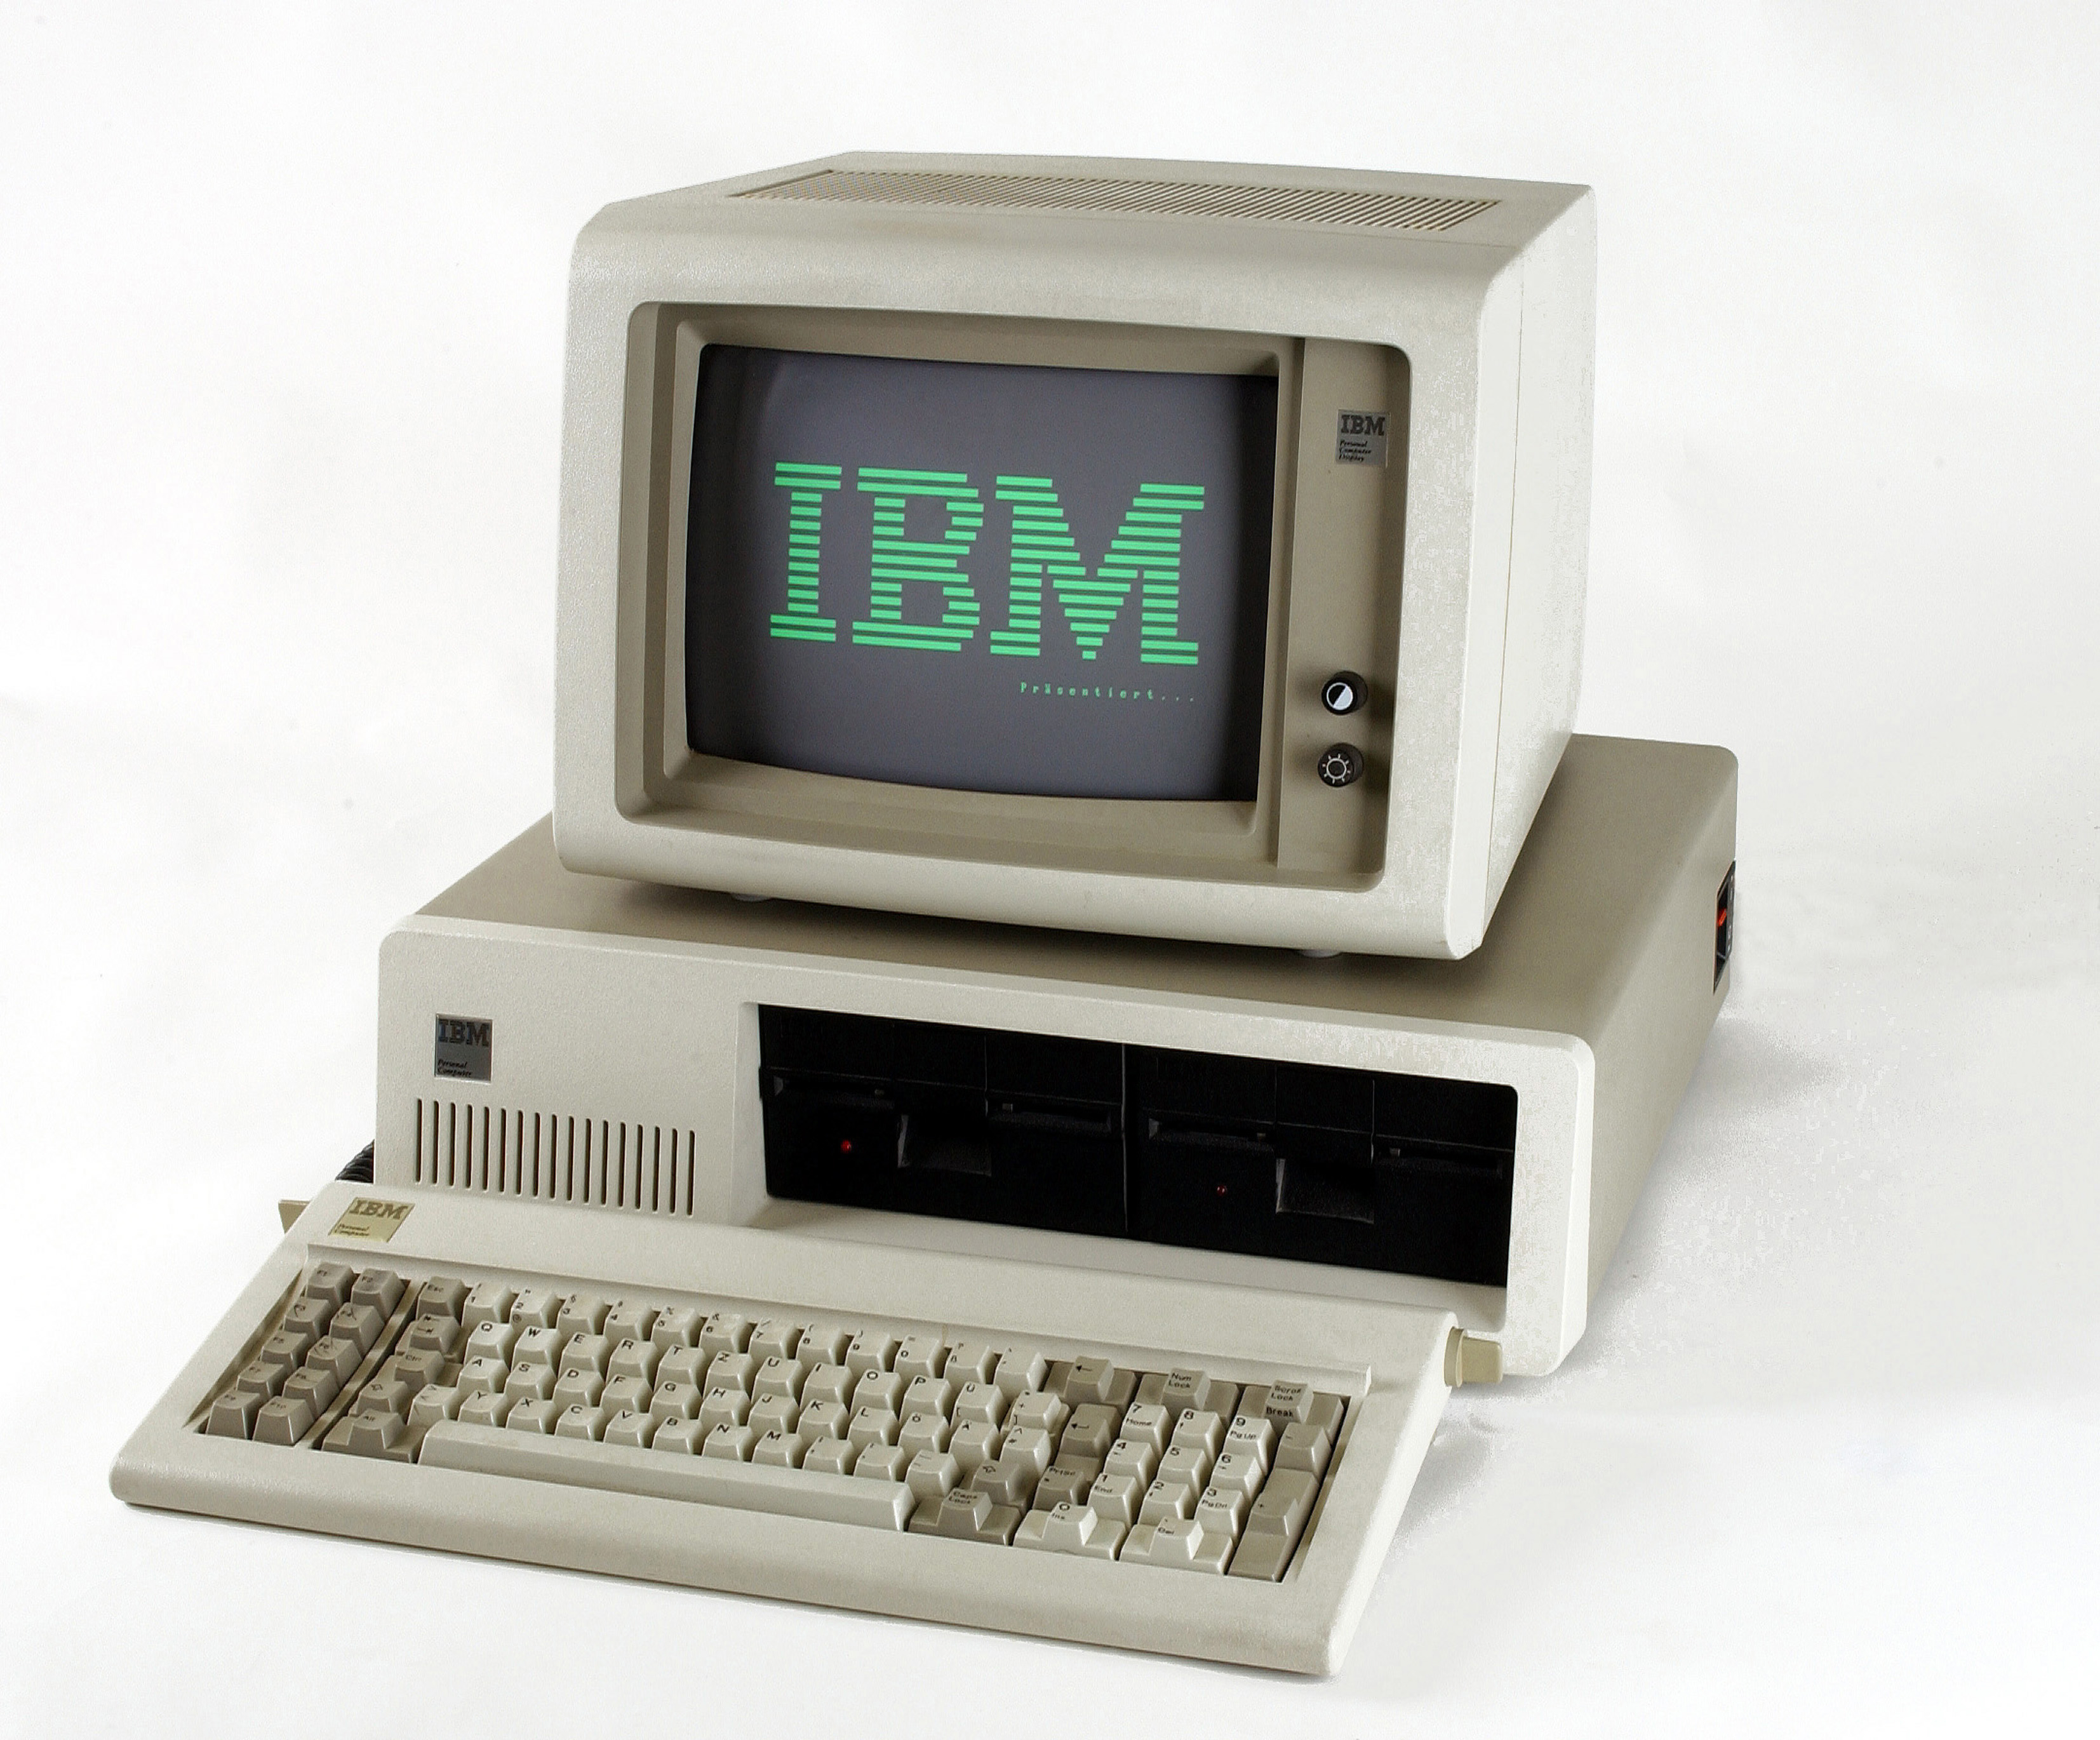 Качество персональных компьютеров. IBM PC или IBM 5150. IBM компьютер 1981. Микрокомпьютер IBM PC 1981. ПК IBM 5150.